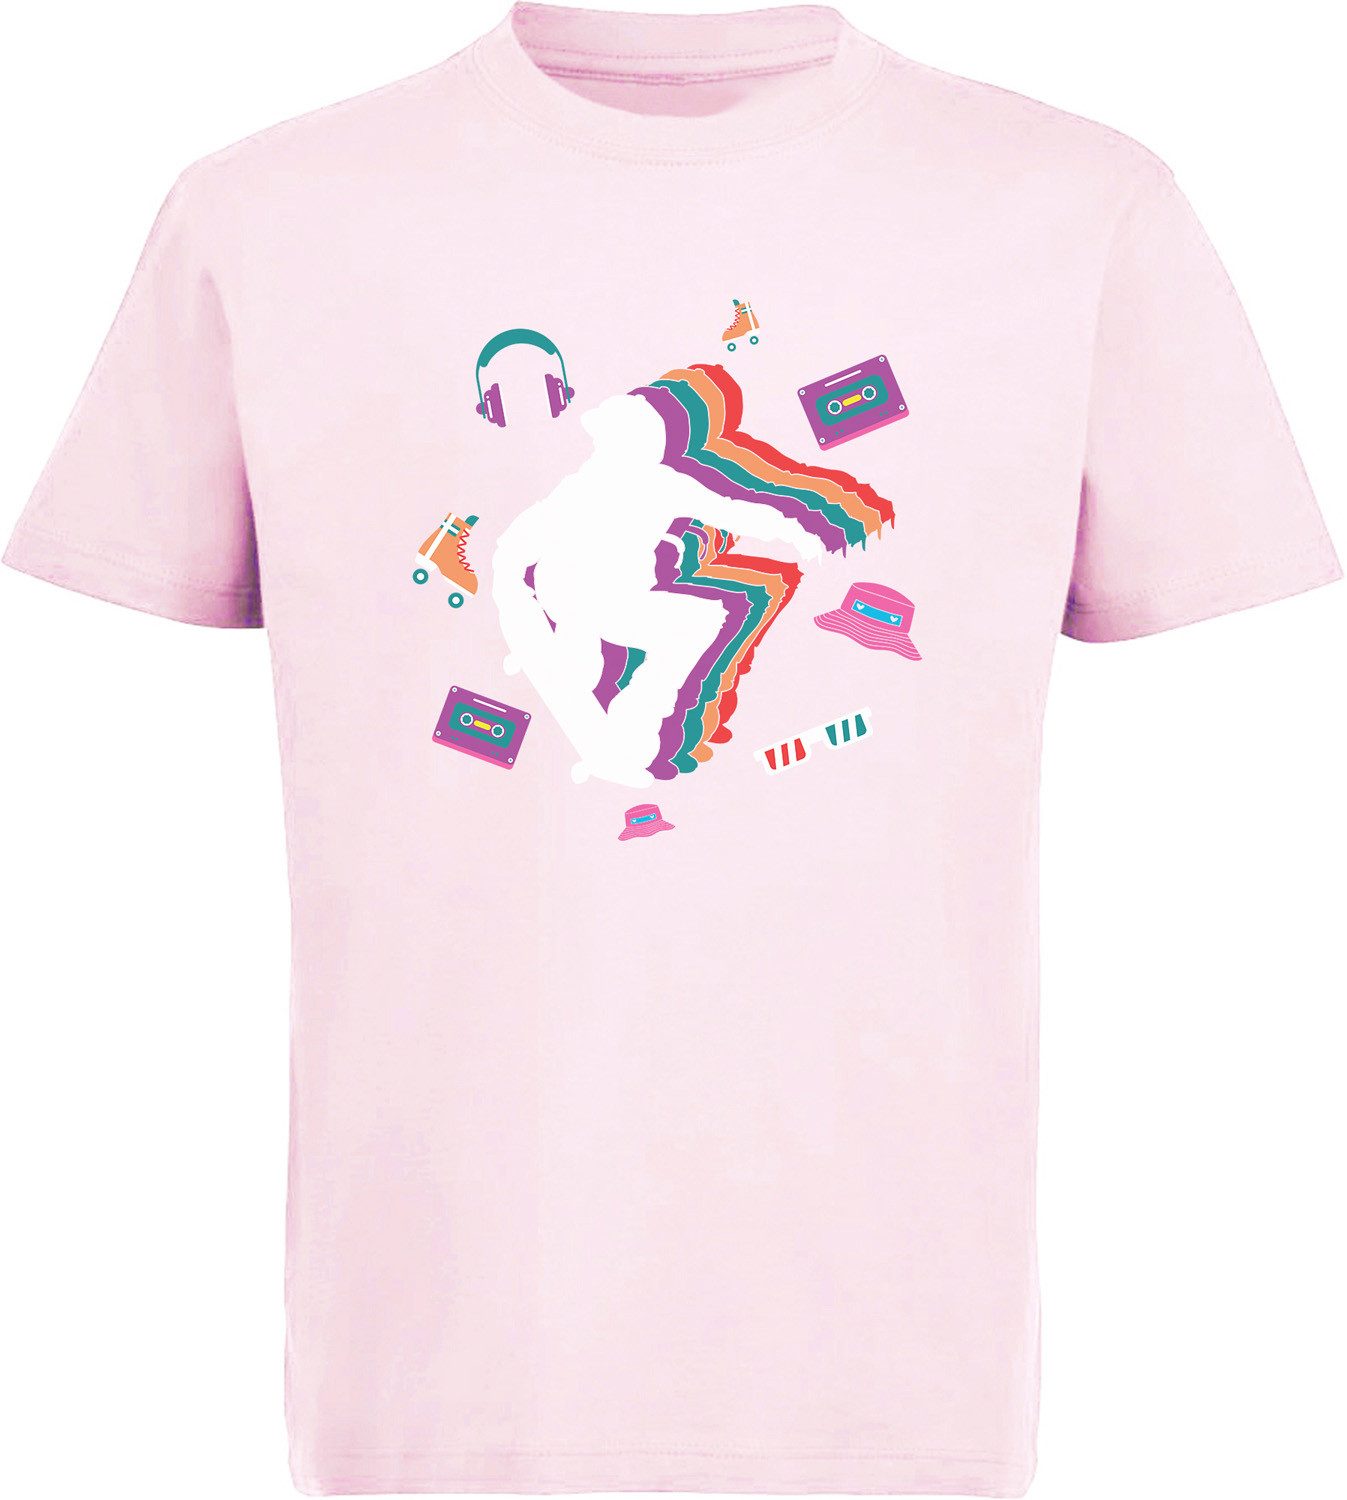 MyDesign24 T-Shirt Kinder Print Shirt mit Skateboarder im Retro Look Bedrucktes Jungen und Mädchen Skater T-Shirt, i521